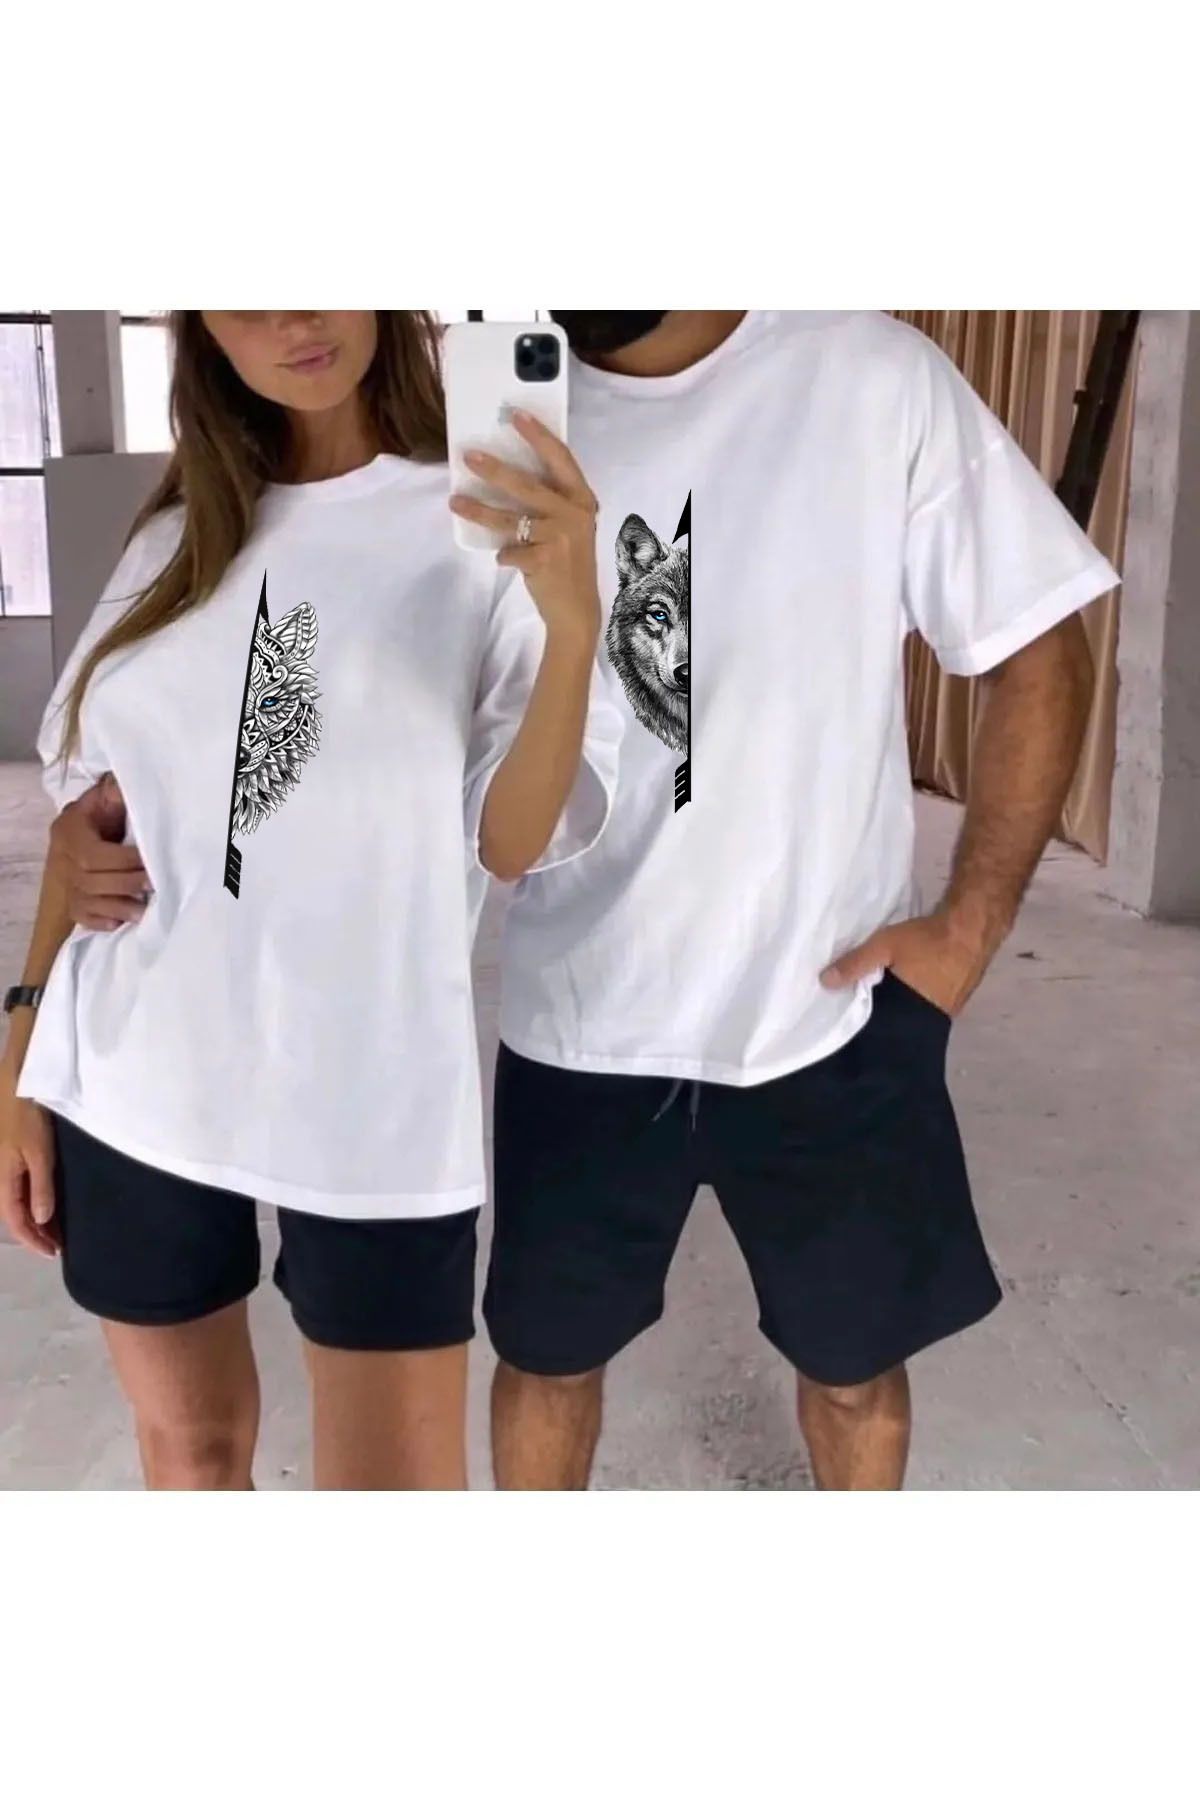 FRADOTEX Kurt Çiftler Renkli Göz Yarı Baskılı Sevgili Çift Kombini Oversize 2'li Şort -T-Shirt